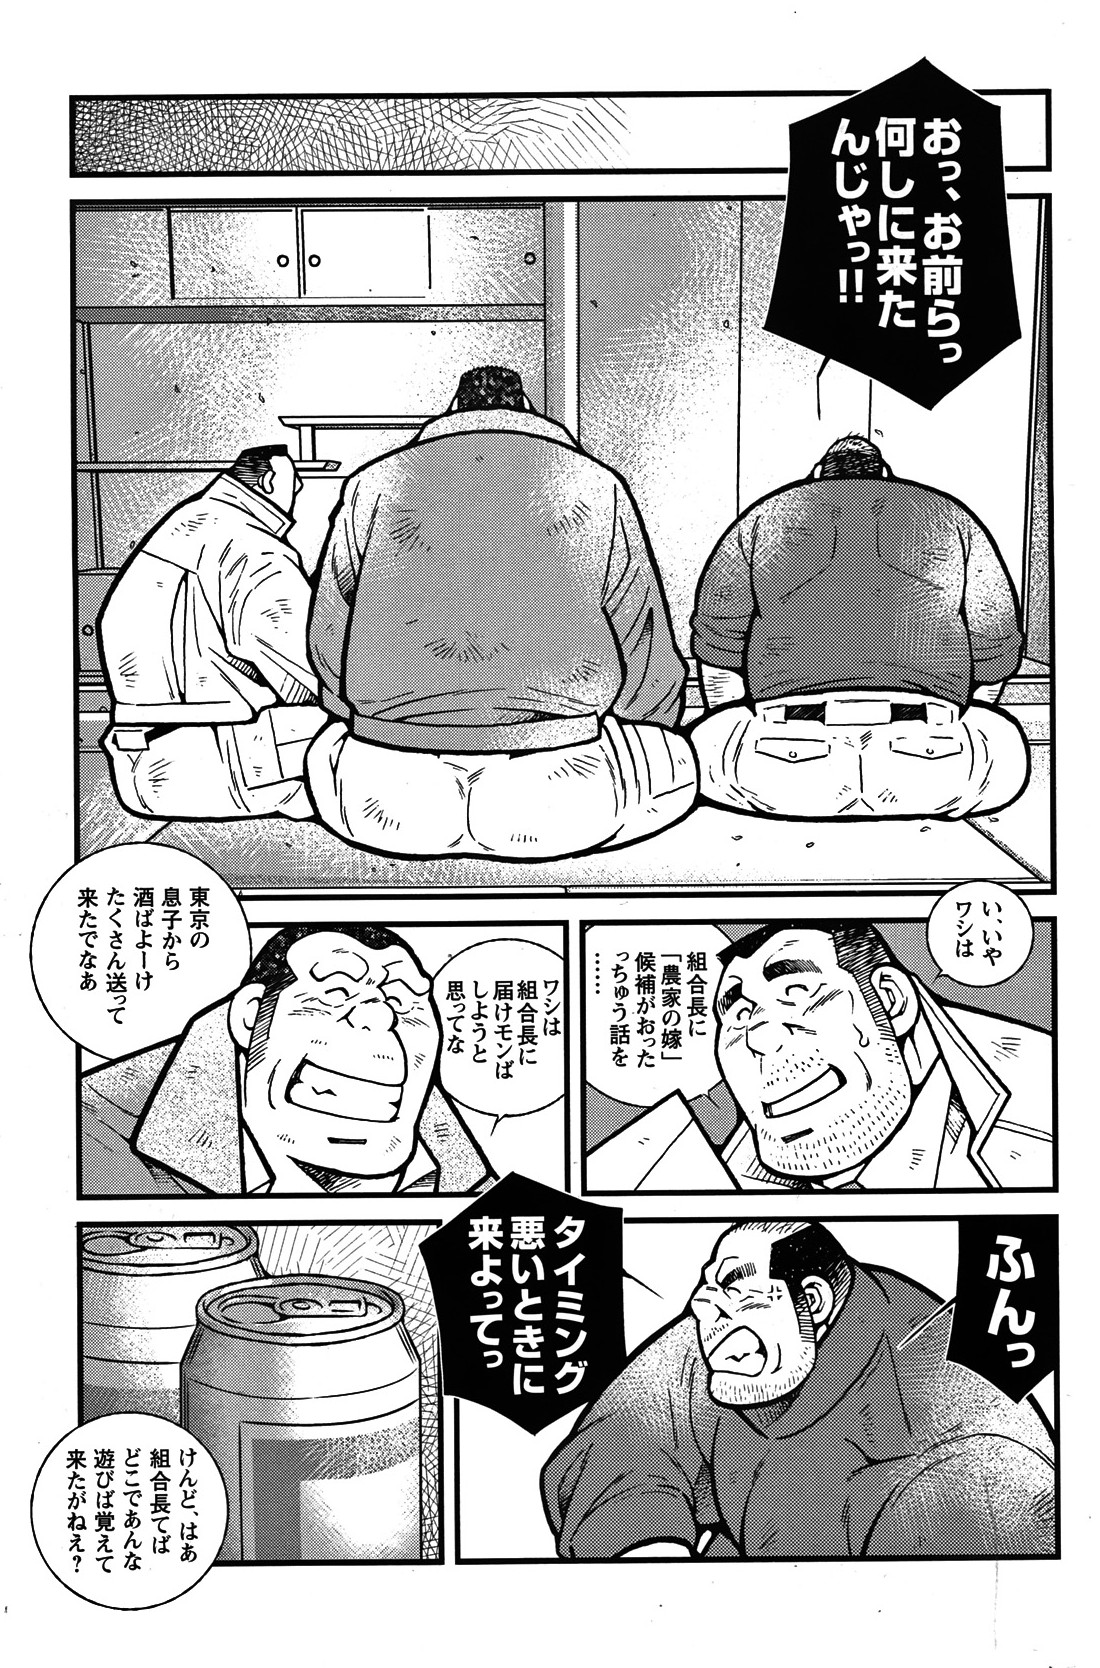 Comic G-men Gaho No. 06 Nikutai Roudousha page 50 full